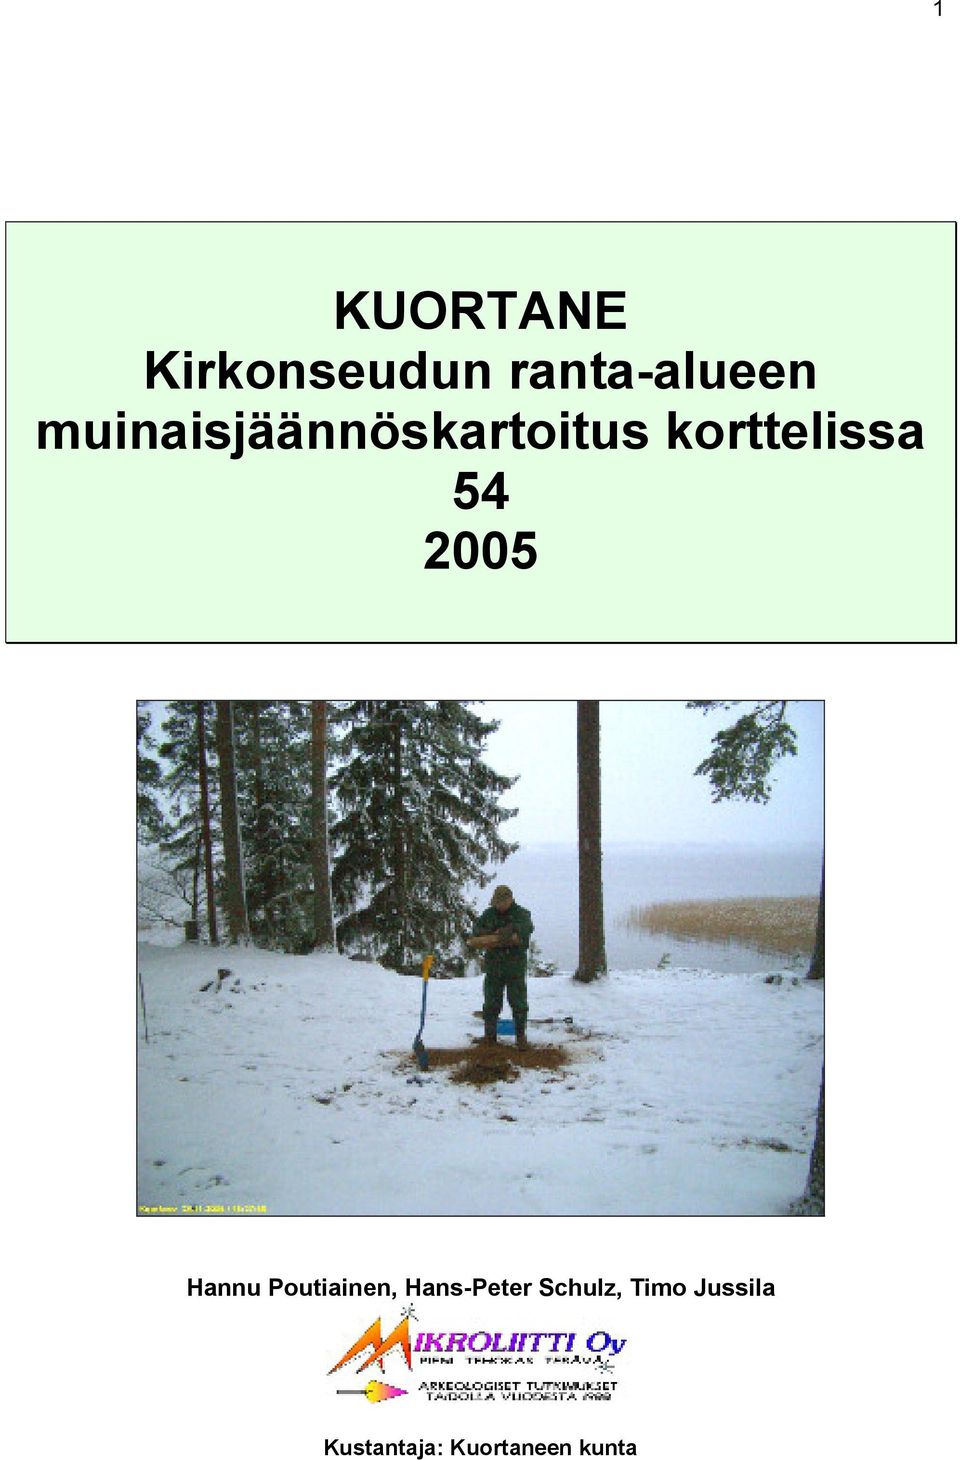 2005 Hannu Poutiainen, Hans-Peter